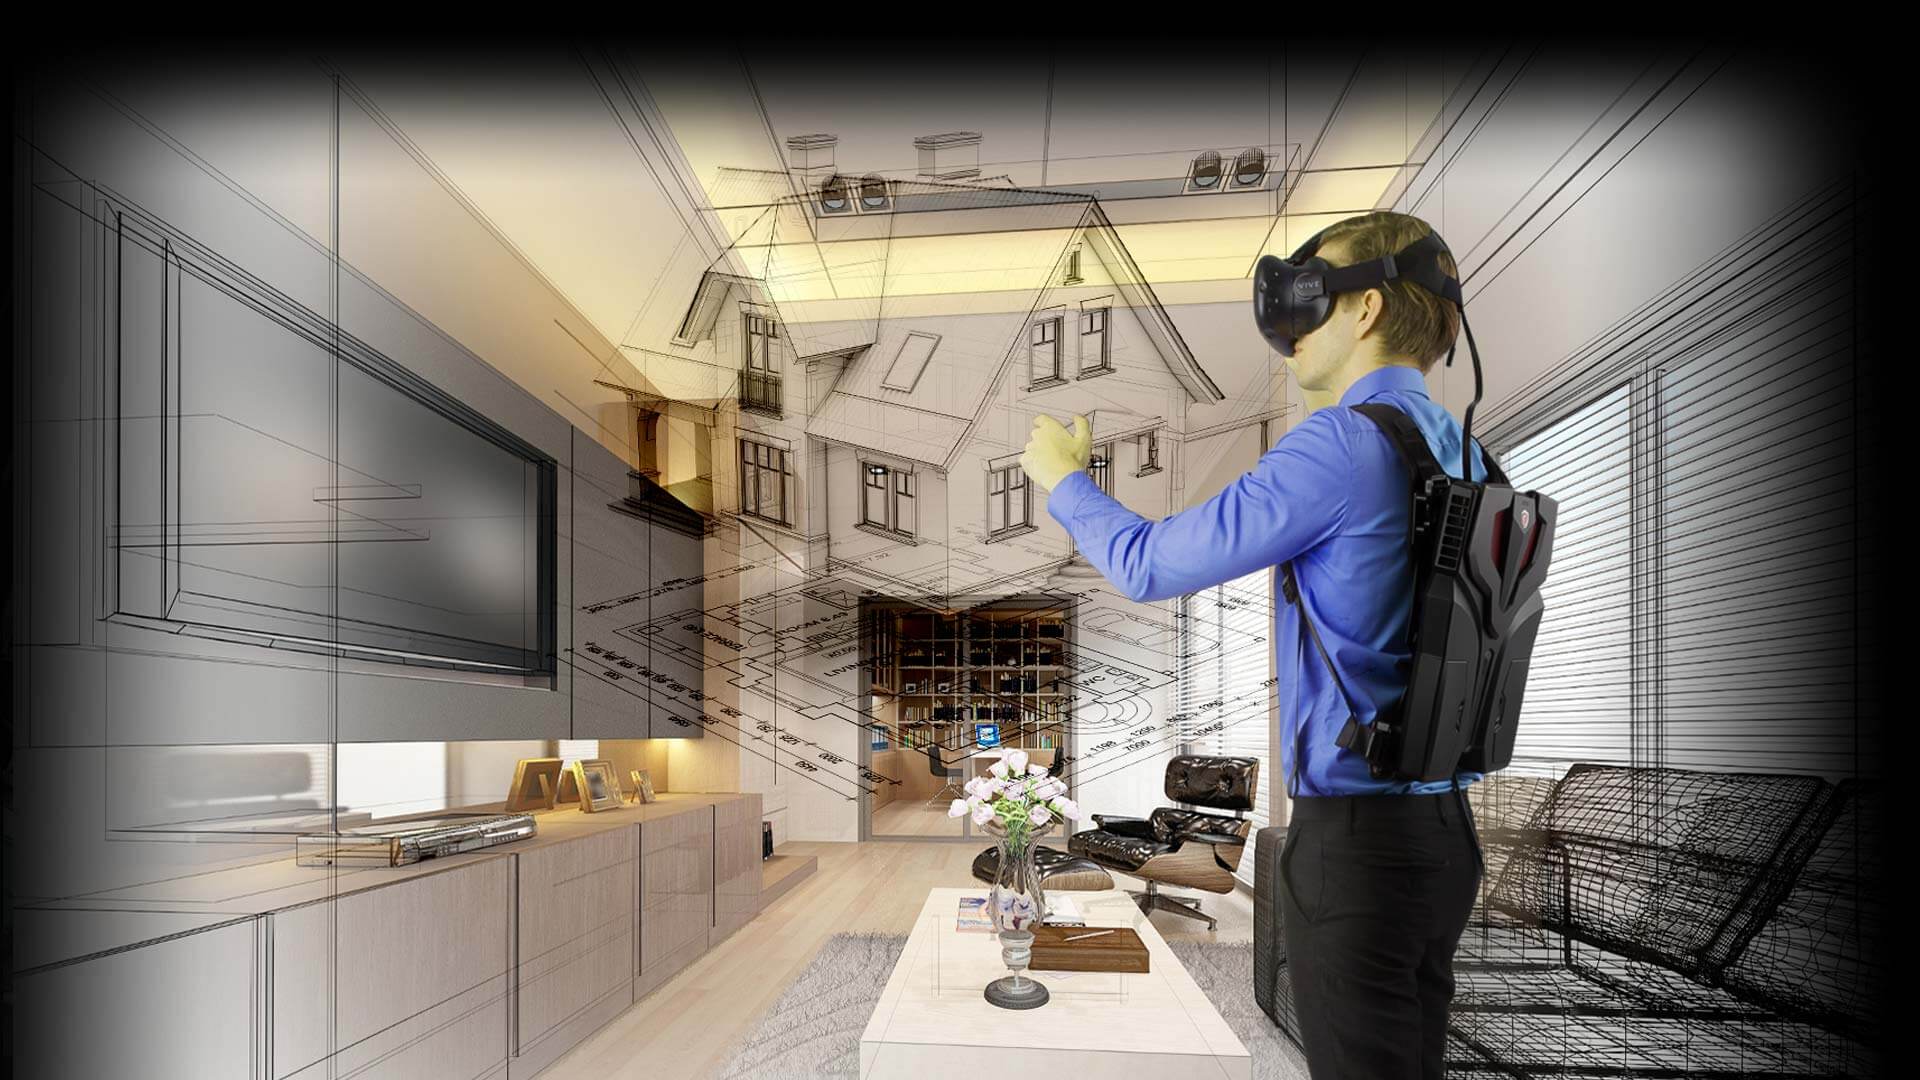 Vr сфера. Виртуальная реальность в архитектуре. Архитектор виртуальной реальности. VR технологии в интерьере. Архитектор виртуальных миров.